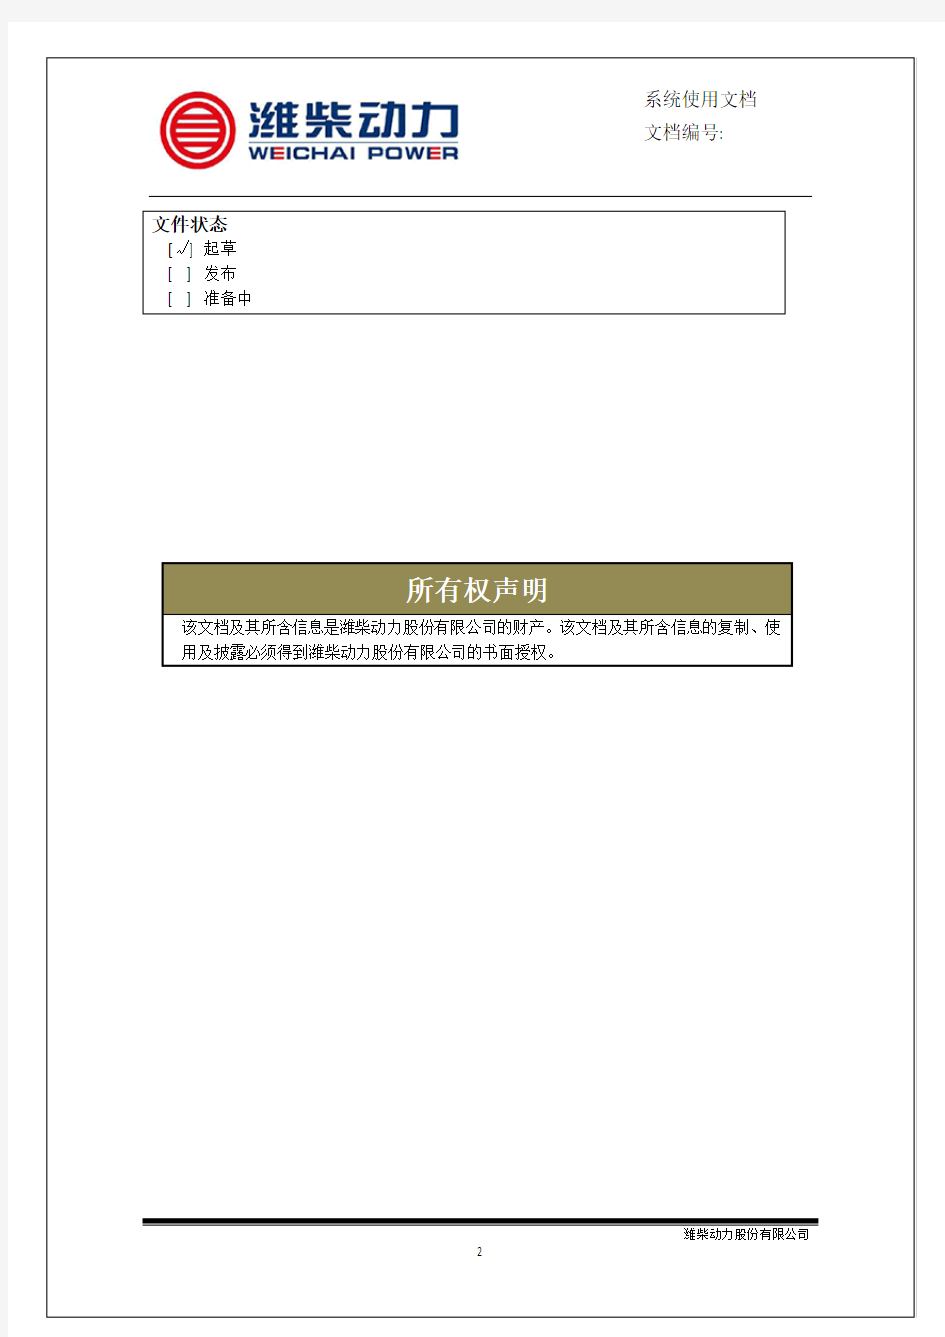 潍柴智多星专用诊断软件用户手册V1.0(1)